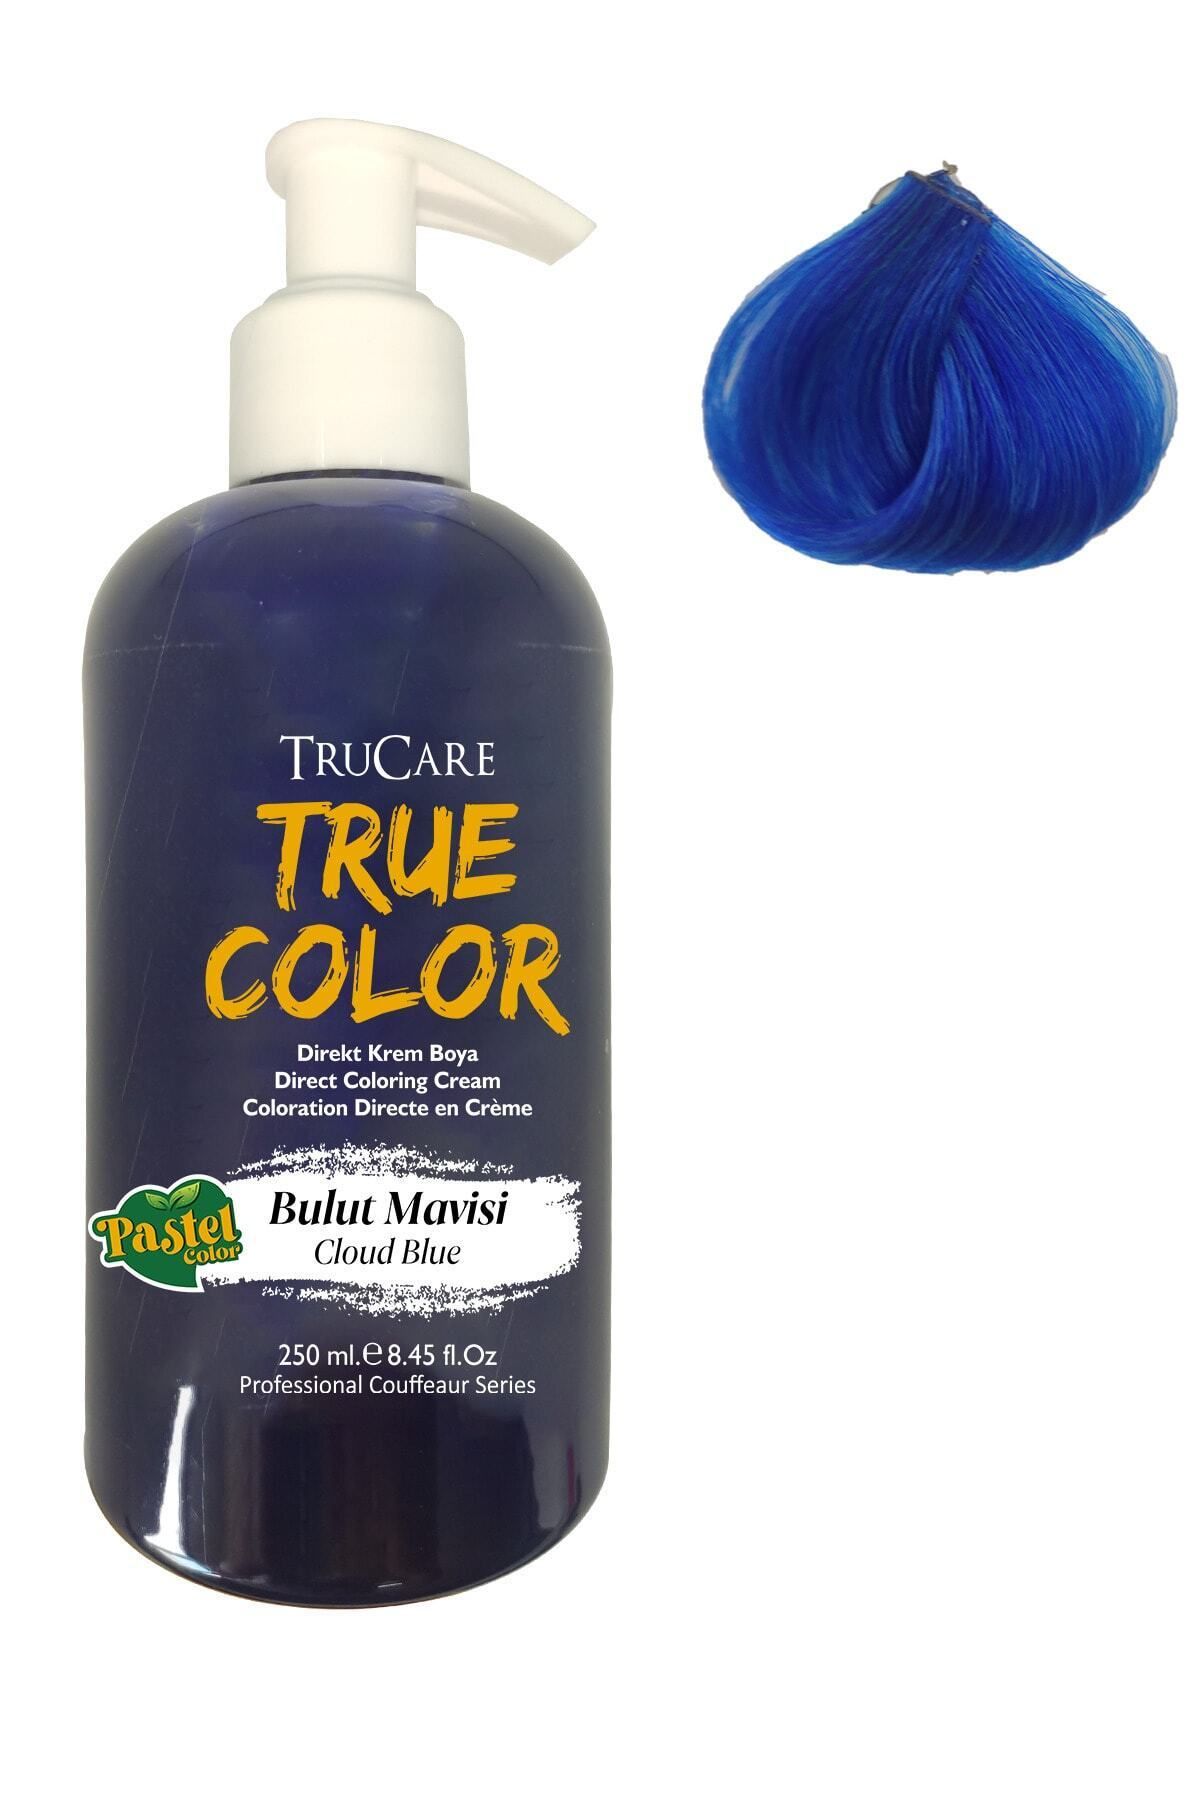 Trucare Truecolor Saç Boyası Bulut Mavisi 250 ml